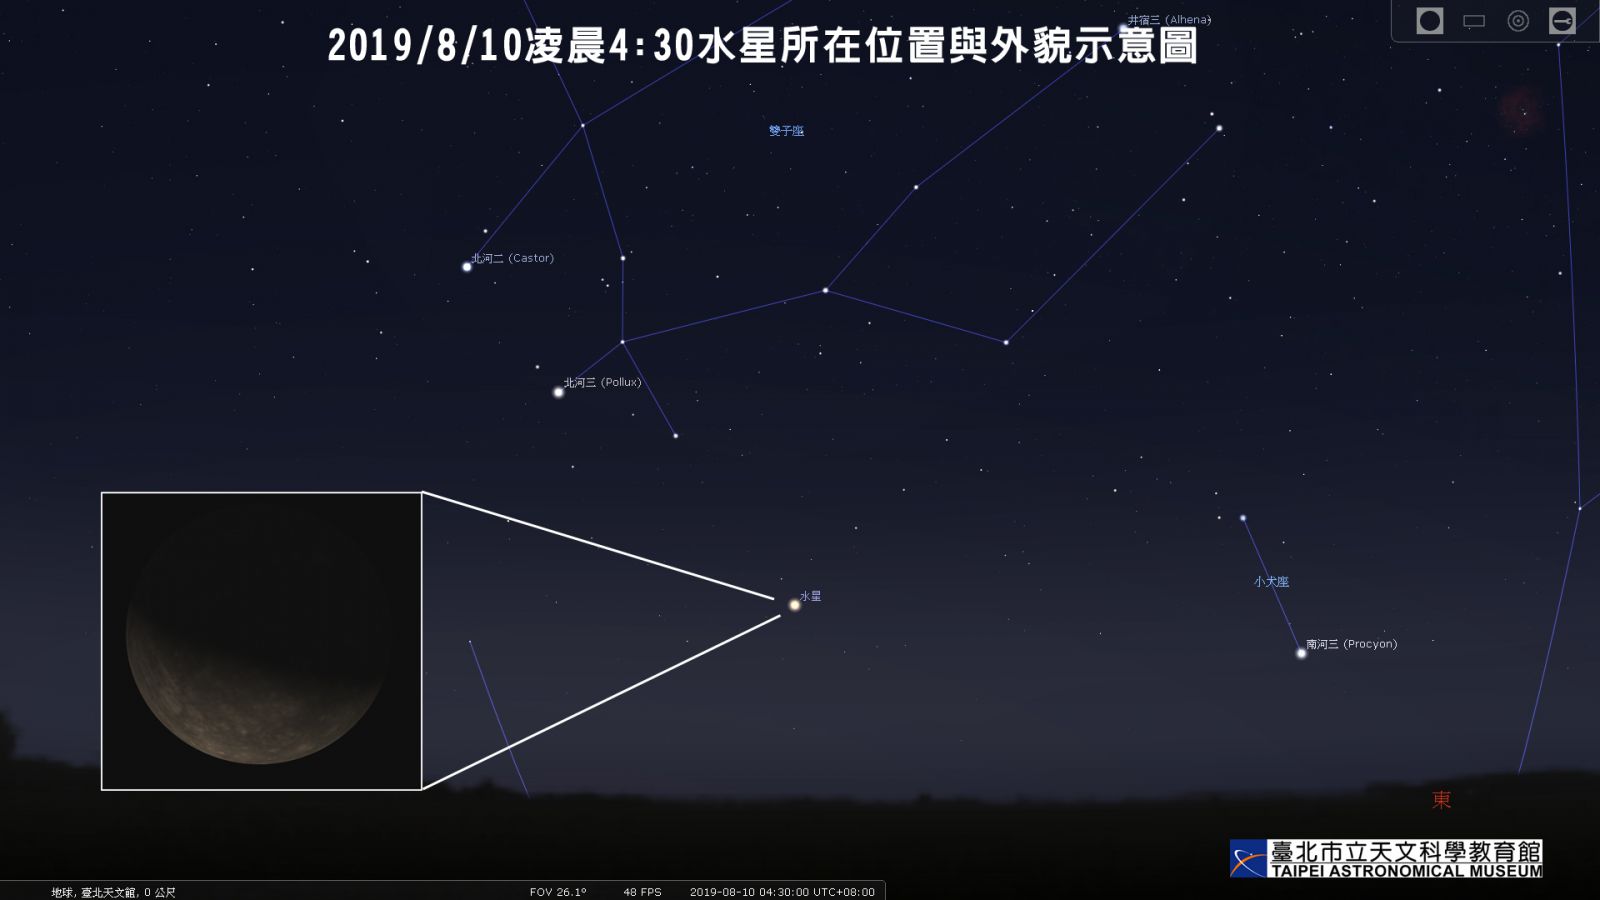 2019/8/10凌晨4:30水星西大距时所在位置和外貌示意图。以上示意图由Stellarium软体产生。